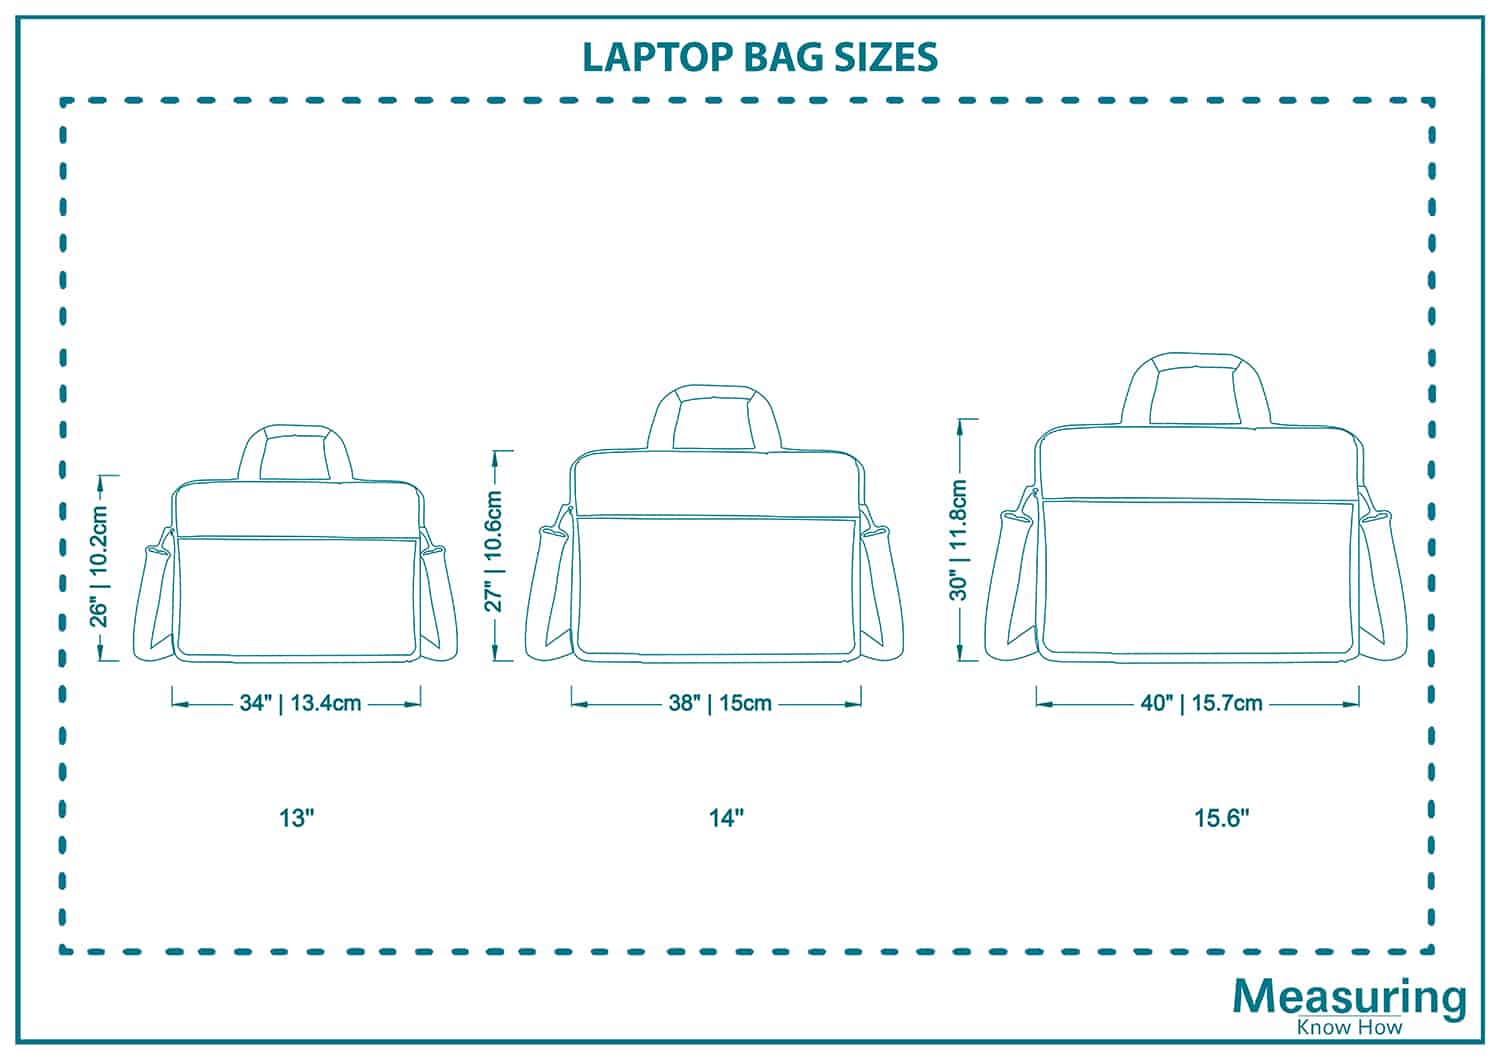 Laptop bag sizes